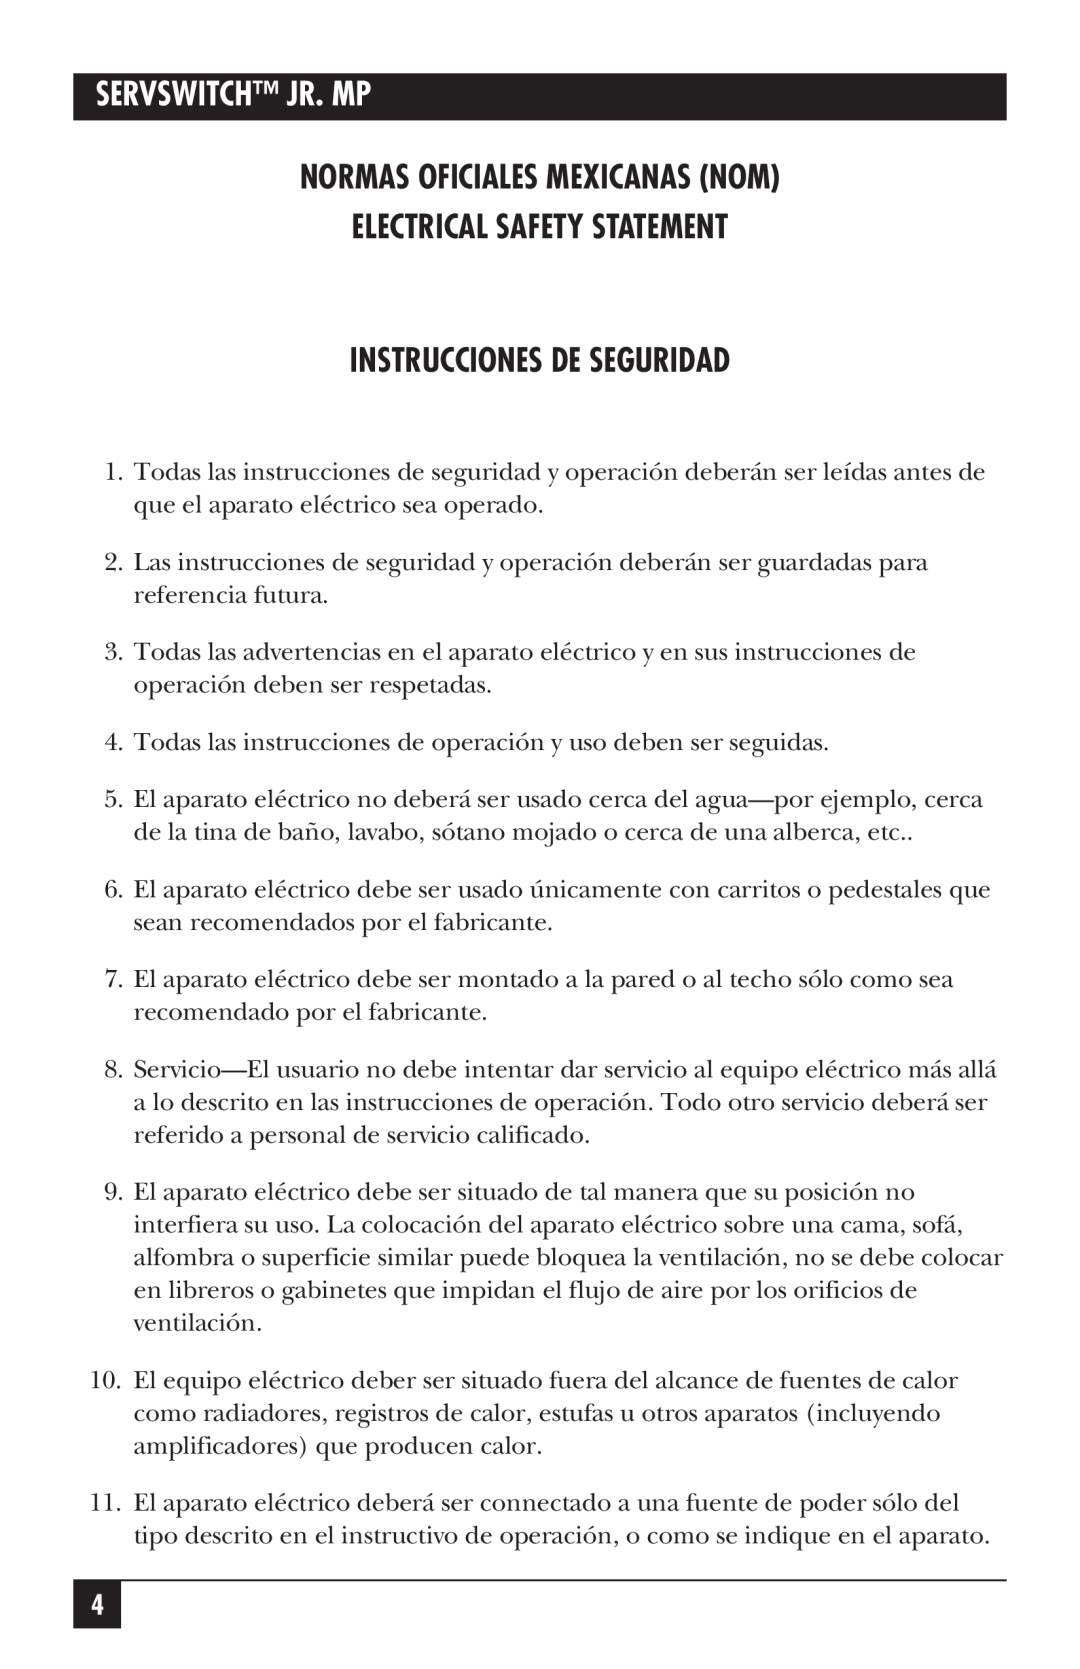 Black Box SW628A-R2, SW627A-R2 manual Normas Oficiales Mexicanas Nom Electrical Safety Statement, Instrucciones De Seguridad 